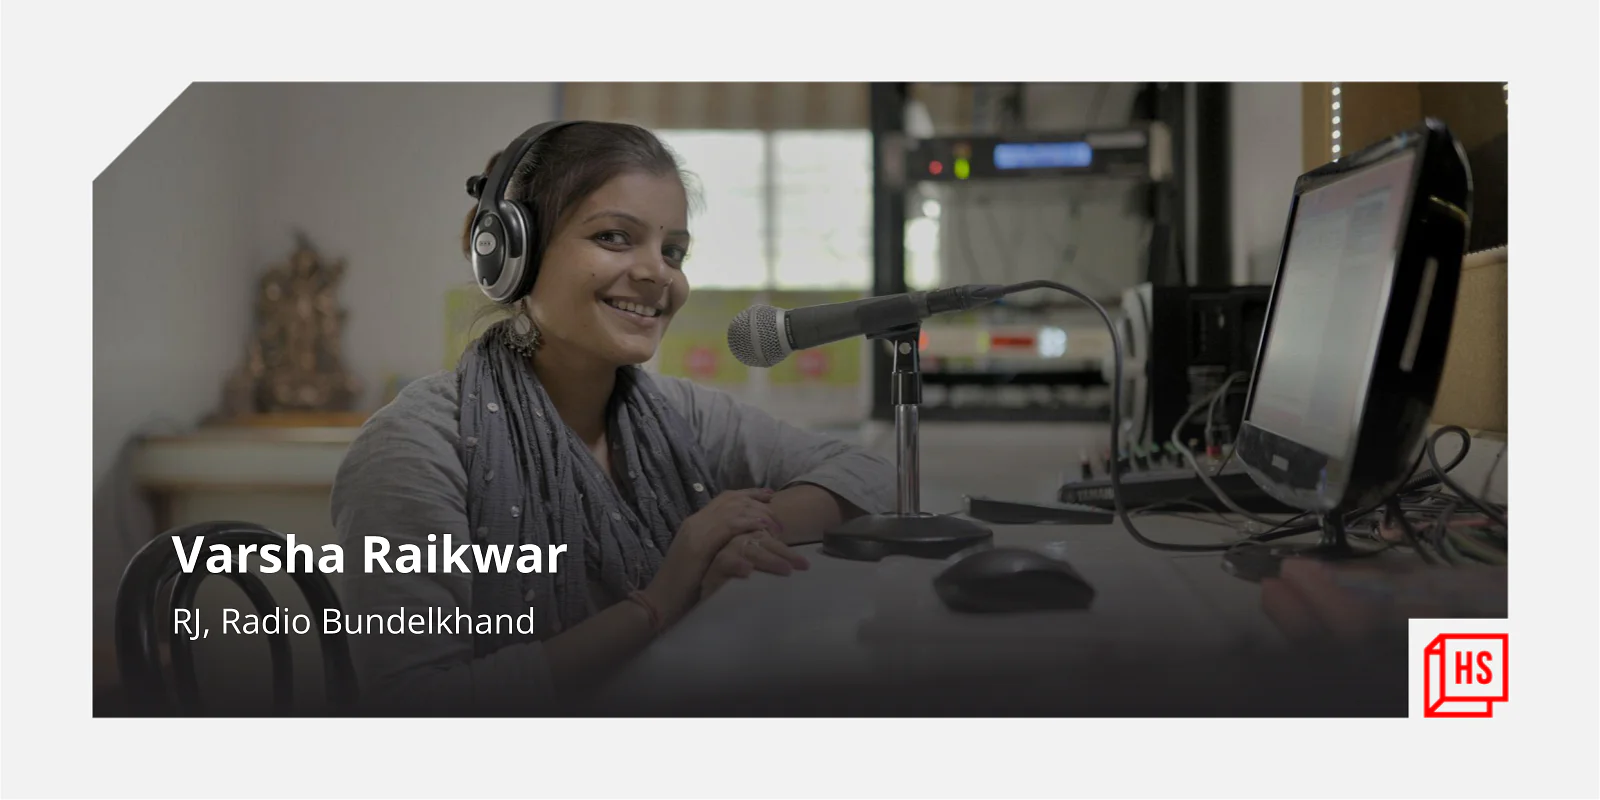 बुंदेलखंड के कम्यूनिटी रेडियो की यह RJ जलवायु परिवर्तन के बारे में फैला रही है जागरूकता